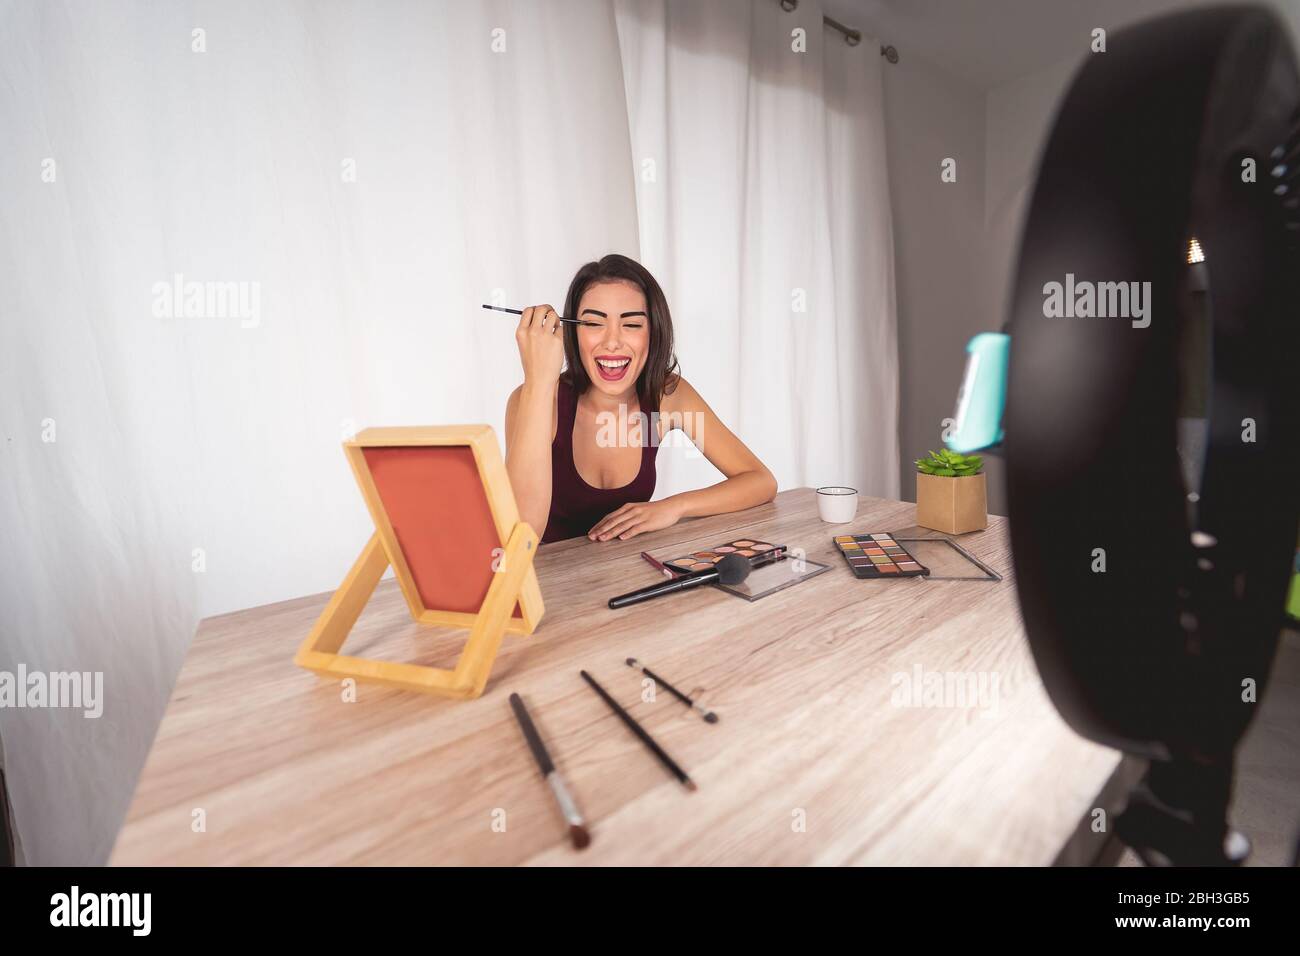 Junge weibliche Vloggerin macht Make-up-Tutorial-Video für Web-Kanal zu Hause - glückliches einflussendes Mädchen mit Spaß beim Filmen mit dem Handy Stockfoto